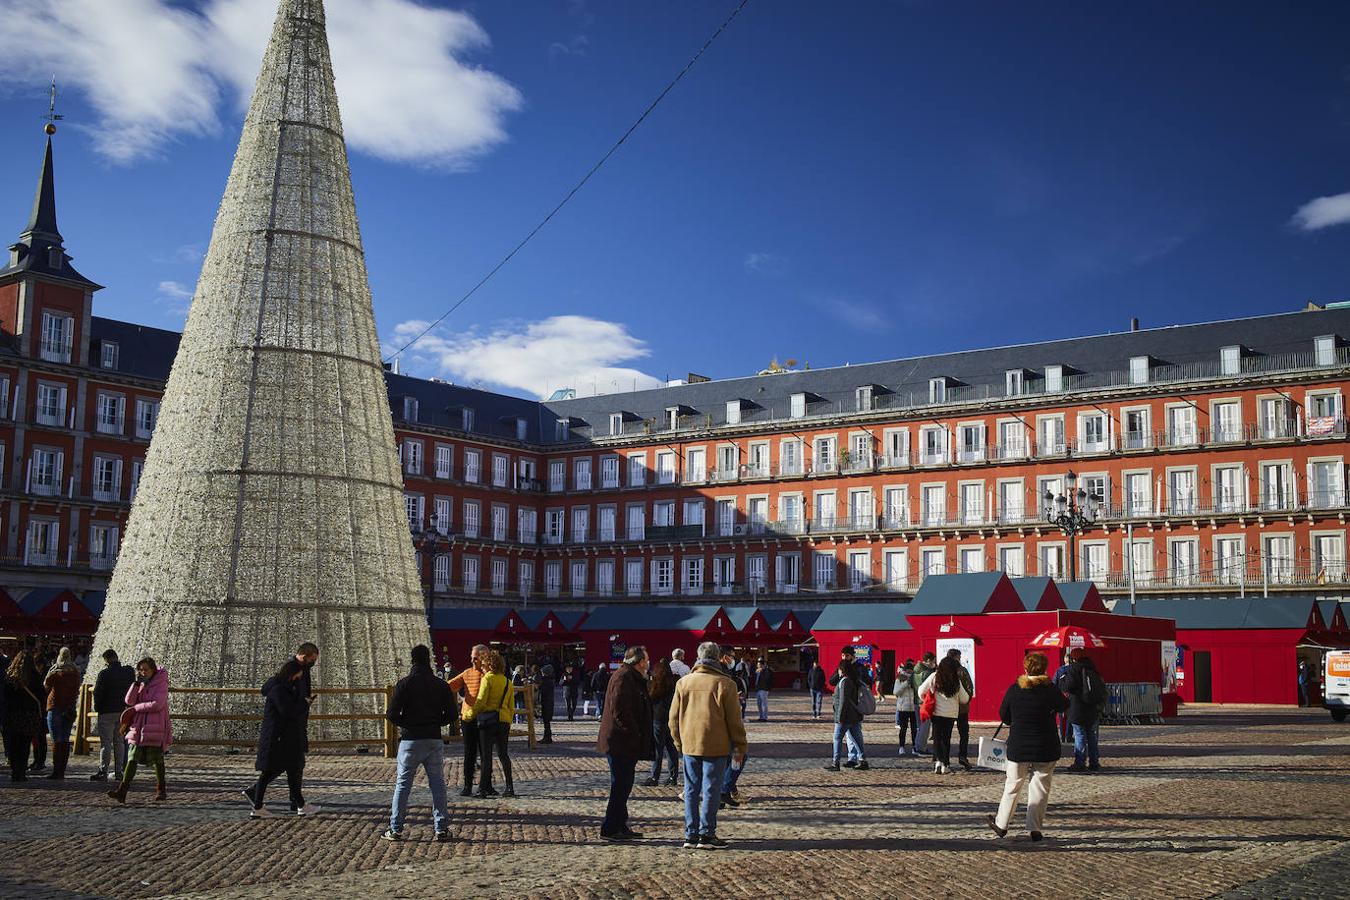 Decoraciones en la plaza. Entre los puestos, la Plaza Mayor recoge un gran árbol de navidad de luces, que se enciende junto al resto de iluminaciones